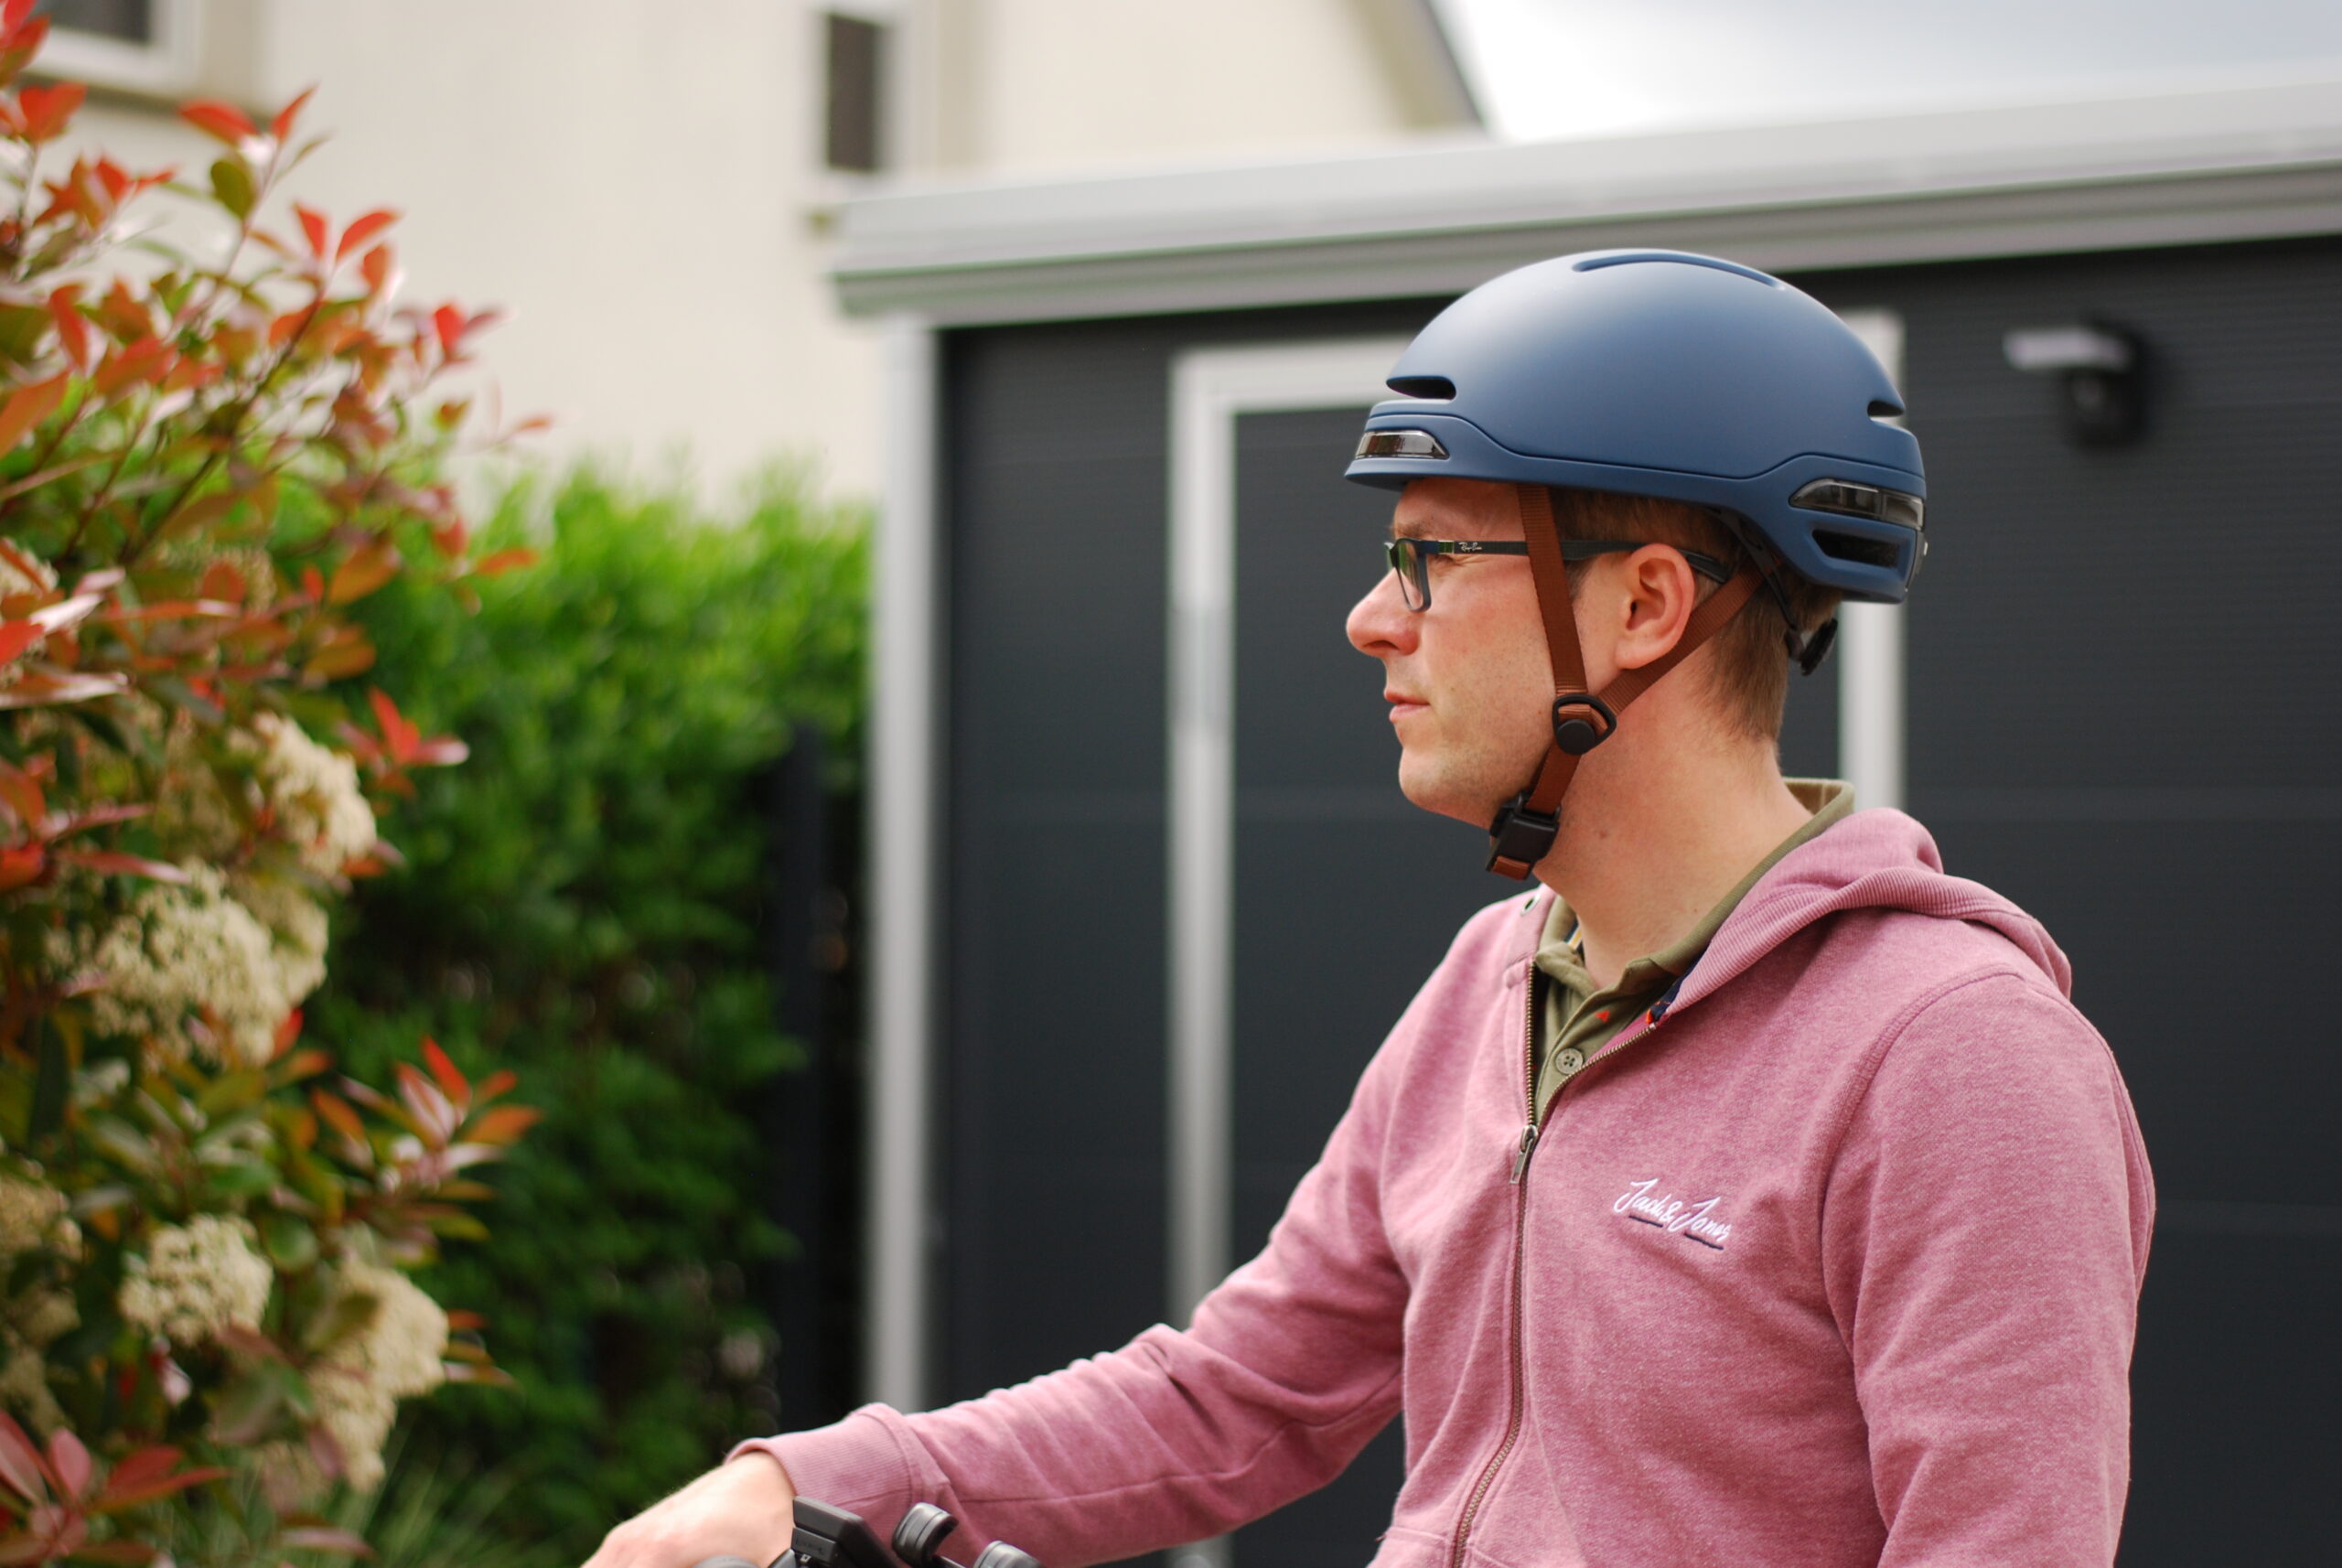 Weelz! • Gamel Remarquable, le casque vélo urbain qui fait pencher